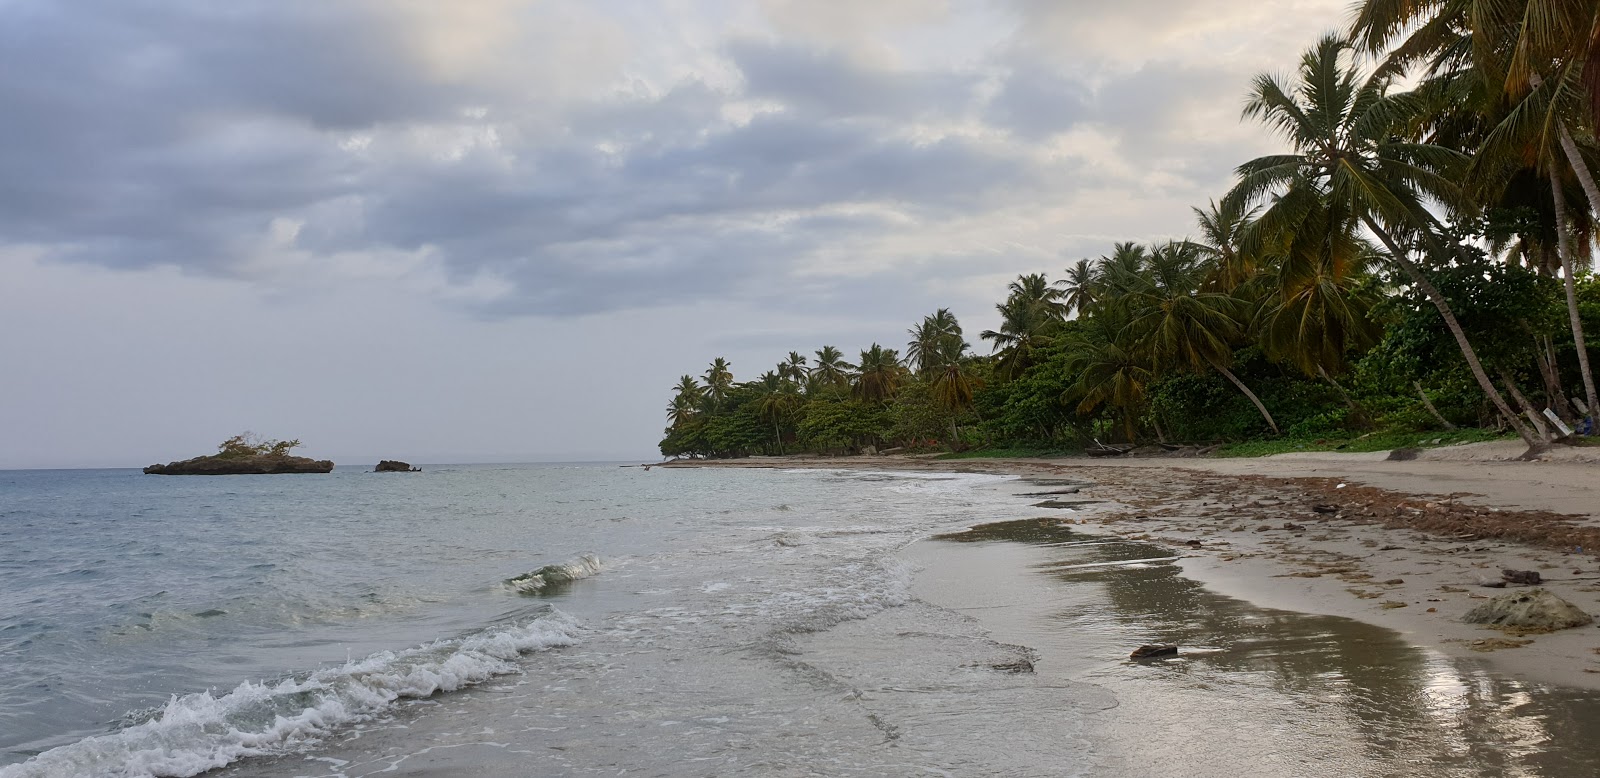 Fotografie cu Playa Anacaona cu o suprafață de nisip gri